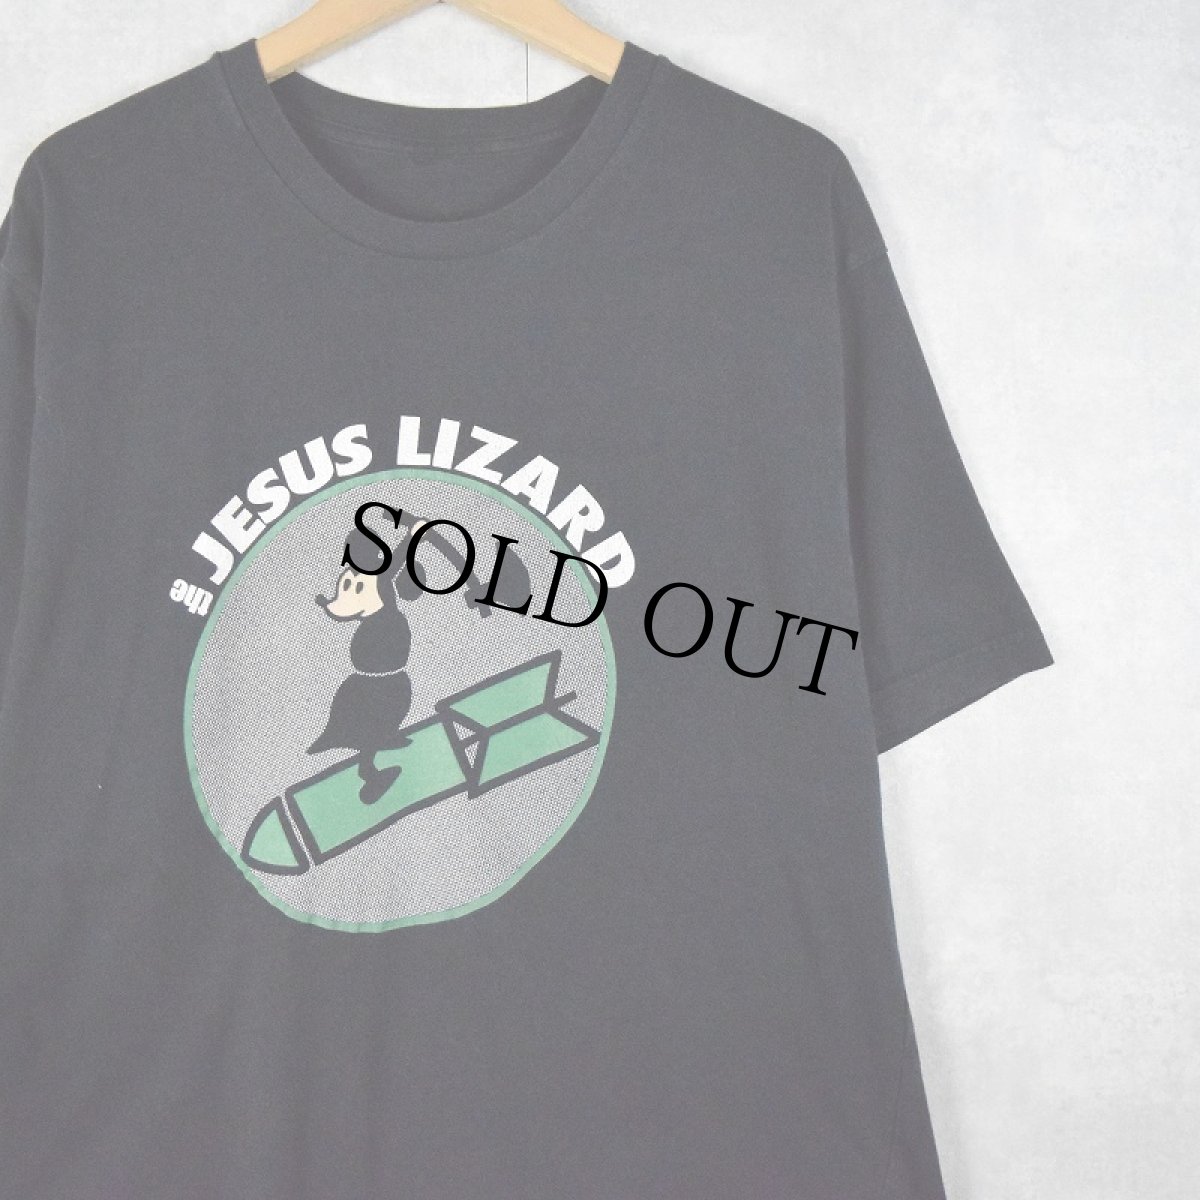 画像1: The Jesus Lizard ロックバンドTシャツ (1)